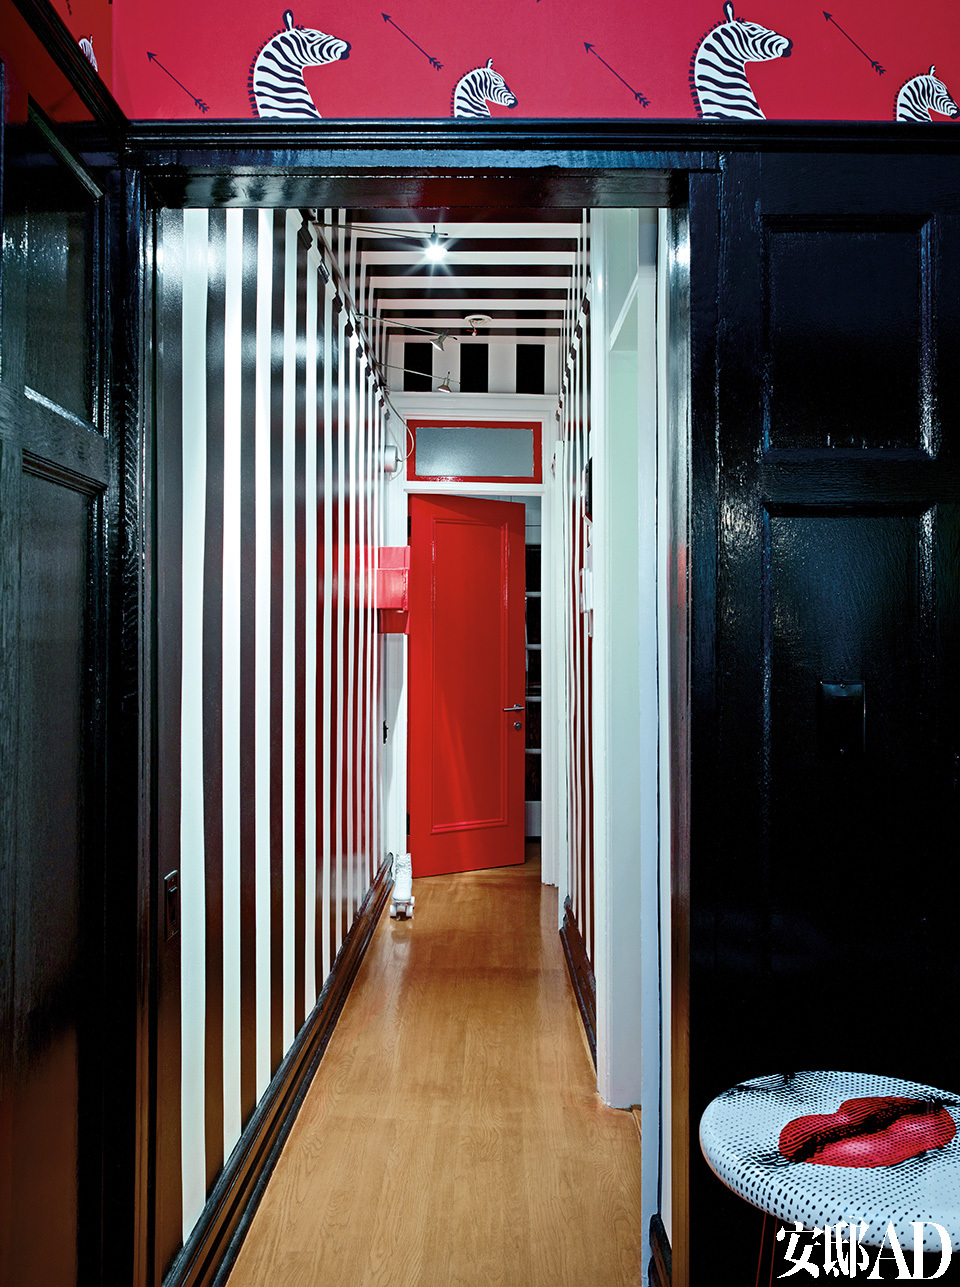 门厅中黑白条纹的特制墙面装饰受到了20世纪60年代童年回忆的影响（太空时代，Verner Panton和Pierre Cardin）。黑白条纹墙纸让原本狭窄的走廊呈现出视觉扩张的效果，白色部分是亚光，黑色部分特意选择高光，灯光下显示得更精致。